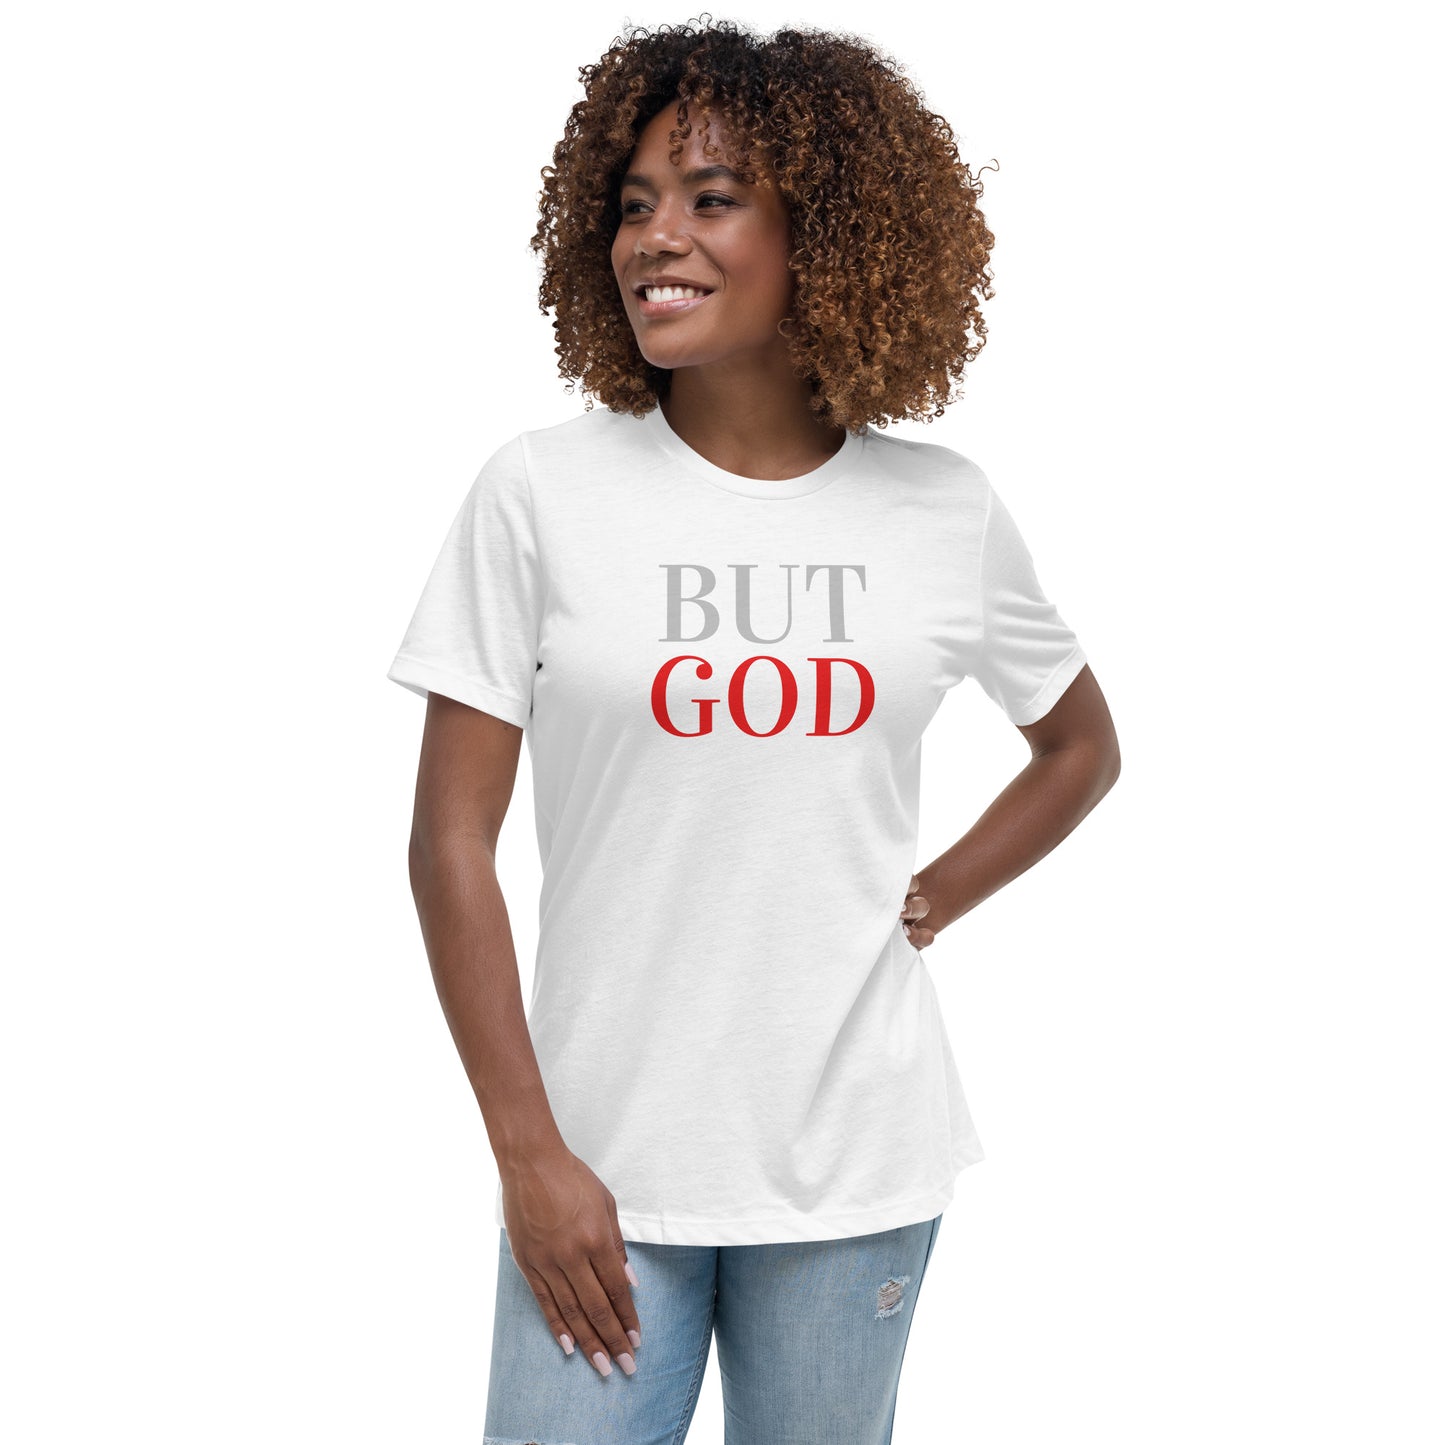 BUT GOD Women's Relaxed T-Shirt